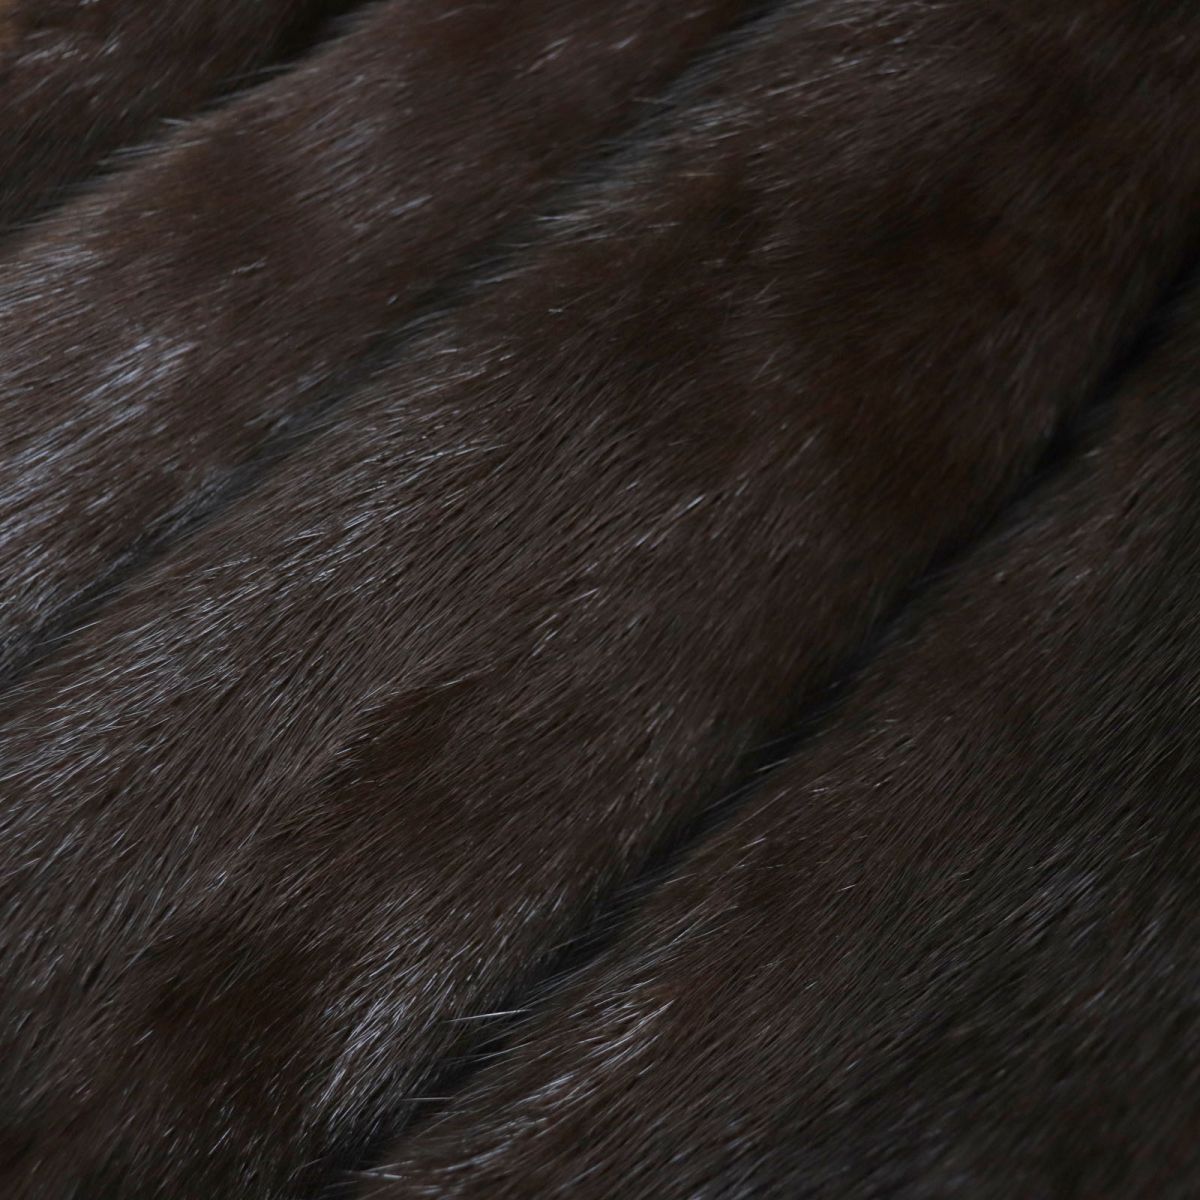 極美品▼MESSALA SAGA MINK サガミンク 本毛皮コート ダークブラウン 大きめサイズ15号 毛質艶やか・柔らか◎